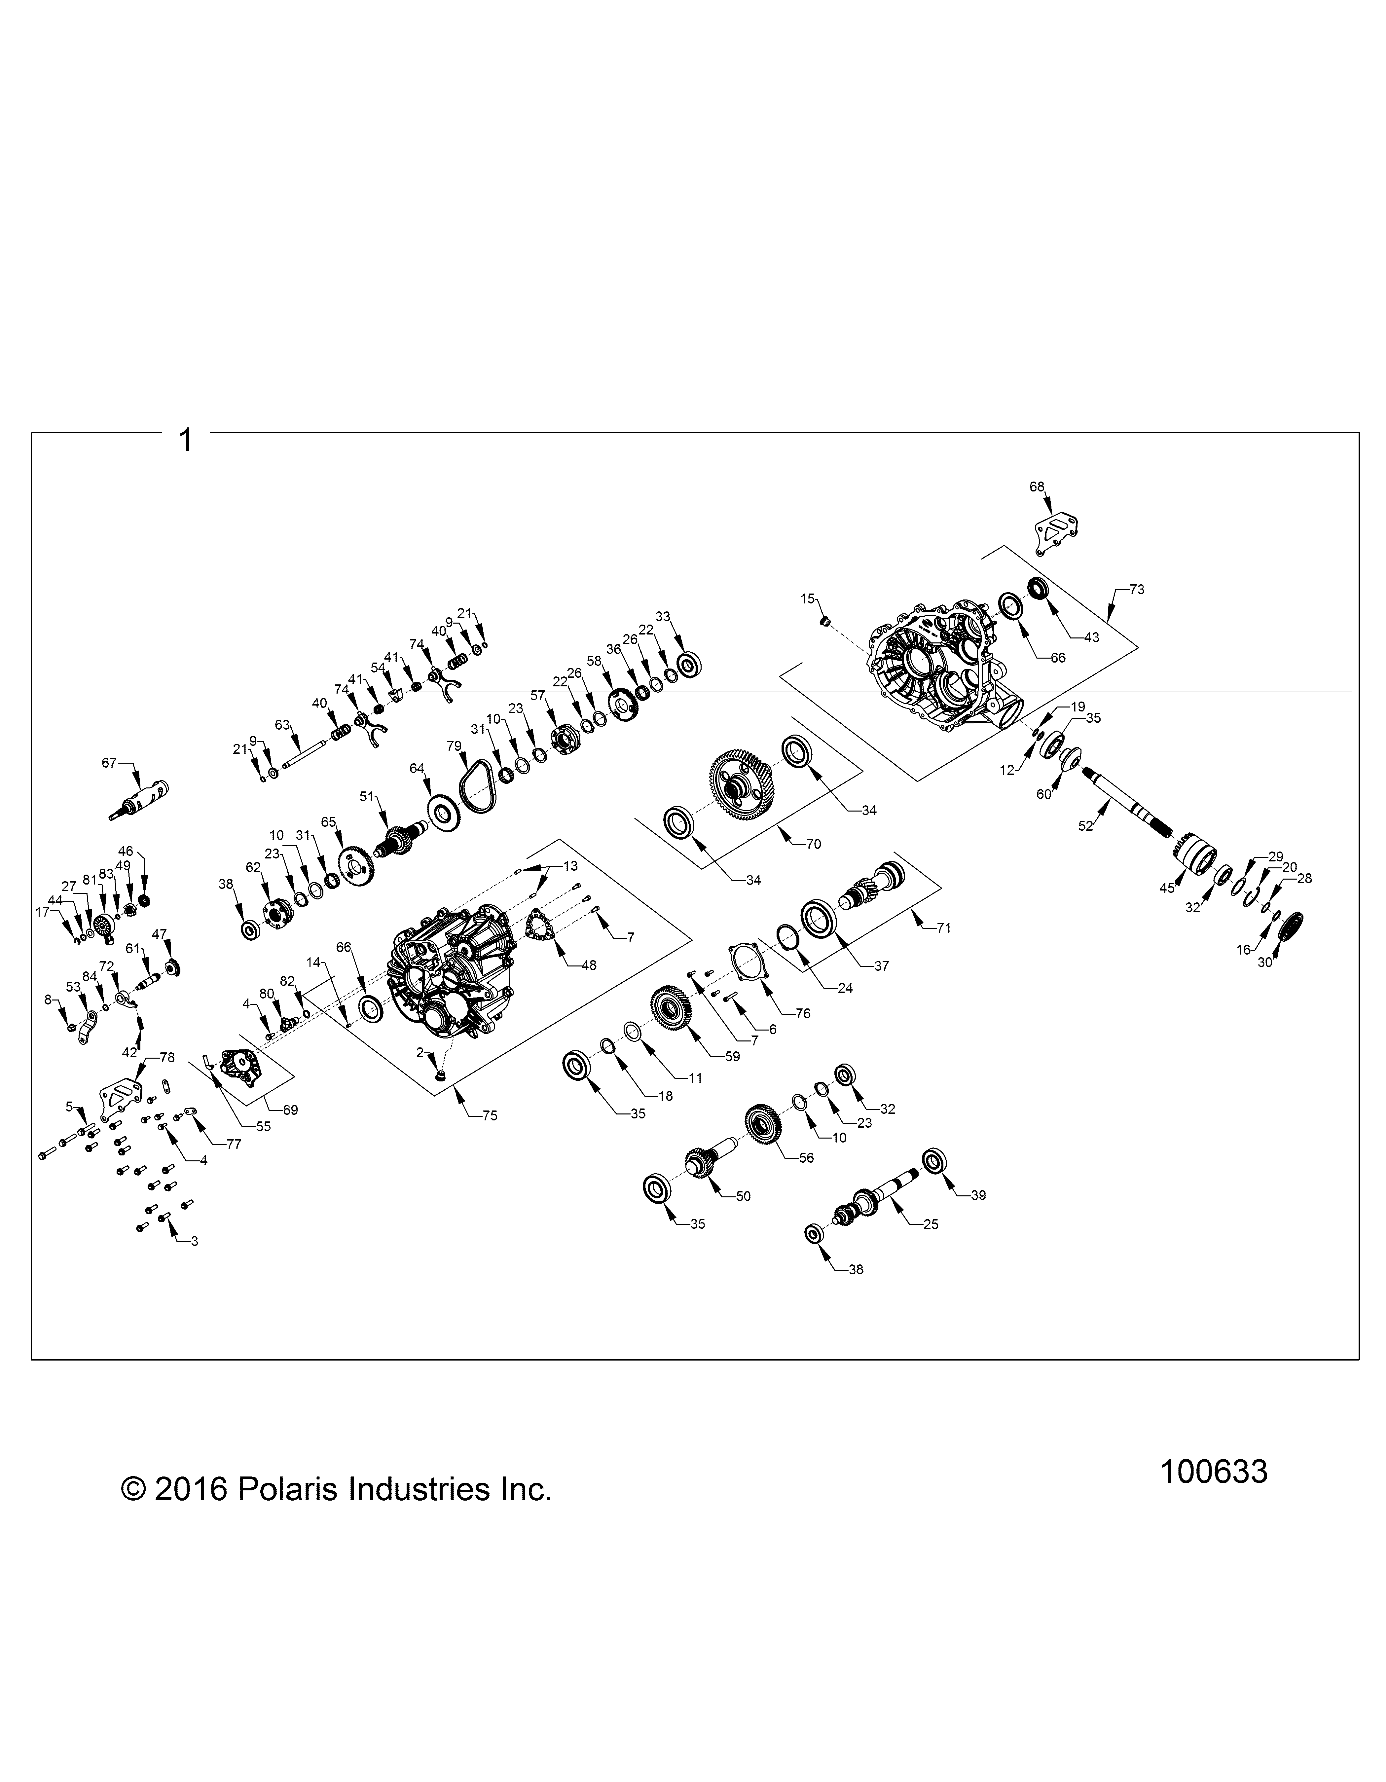 Foto diagrama Polaris que contem a peça 3235386